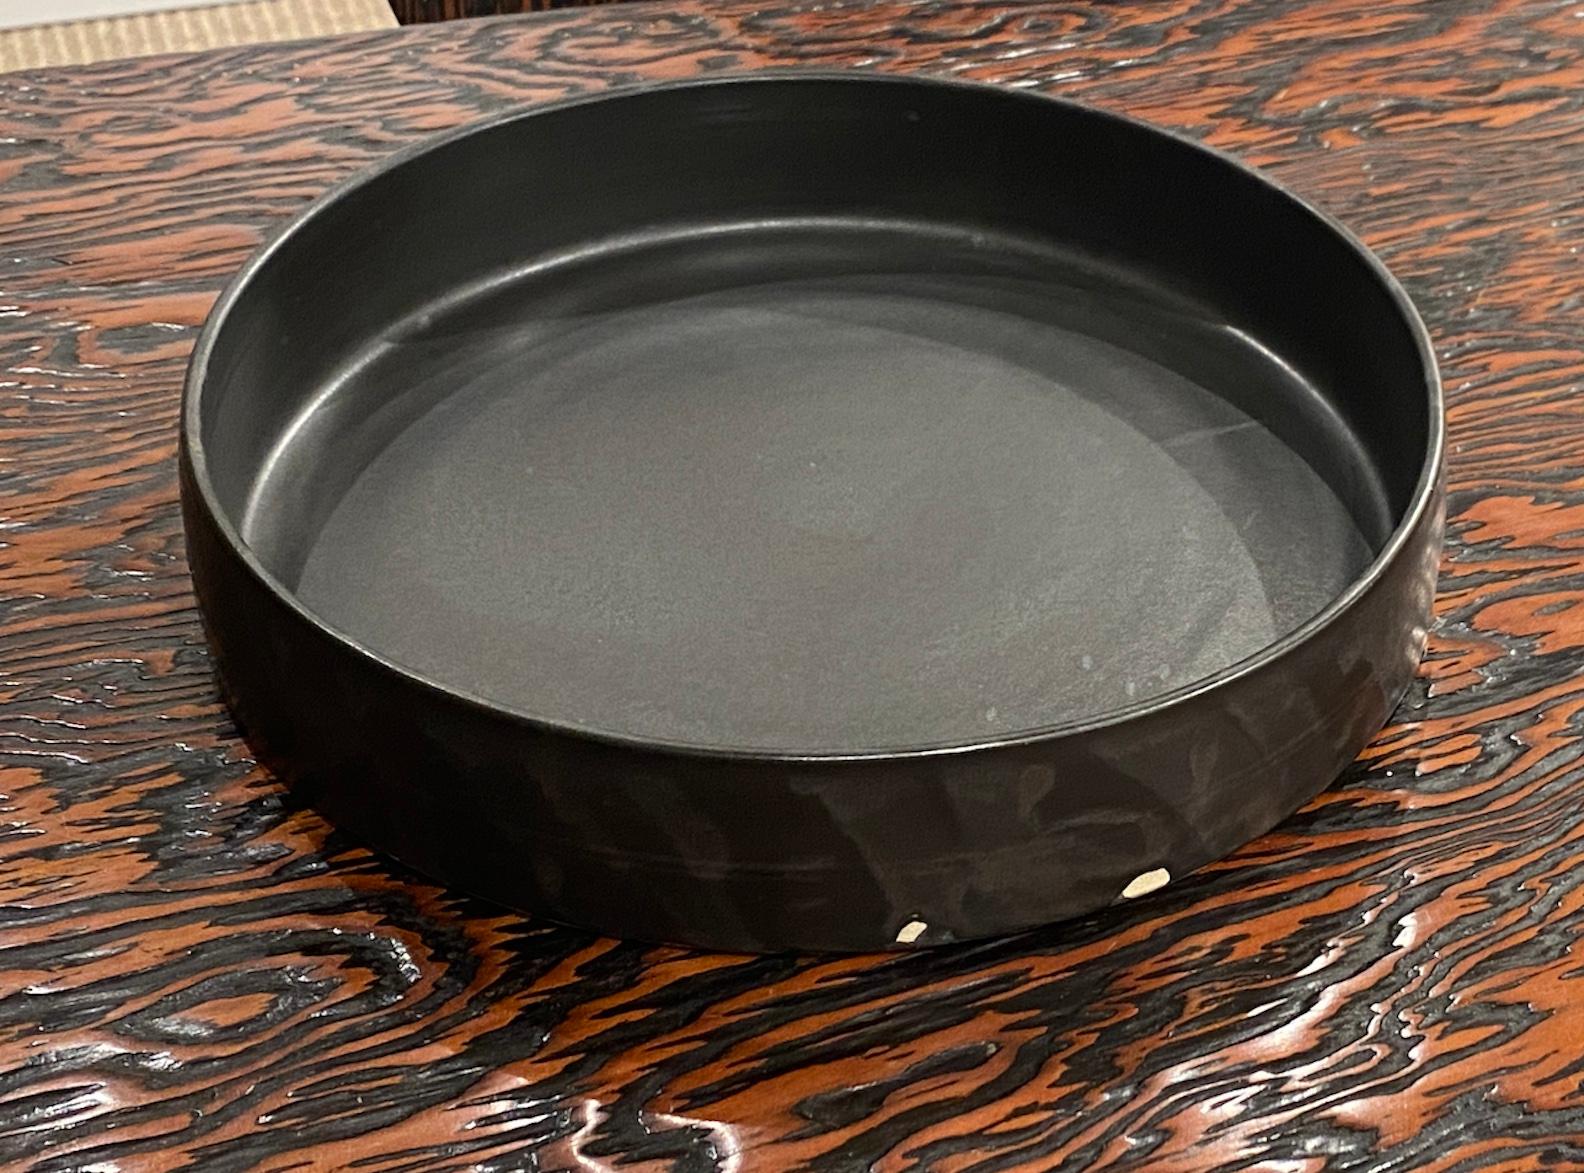 Ce plat en céramique émaillée noire fabriqué à la main est une pièce unique réalisée par un artiste céramiste britannique des Cotswolds. 